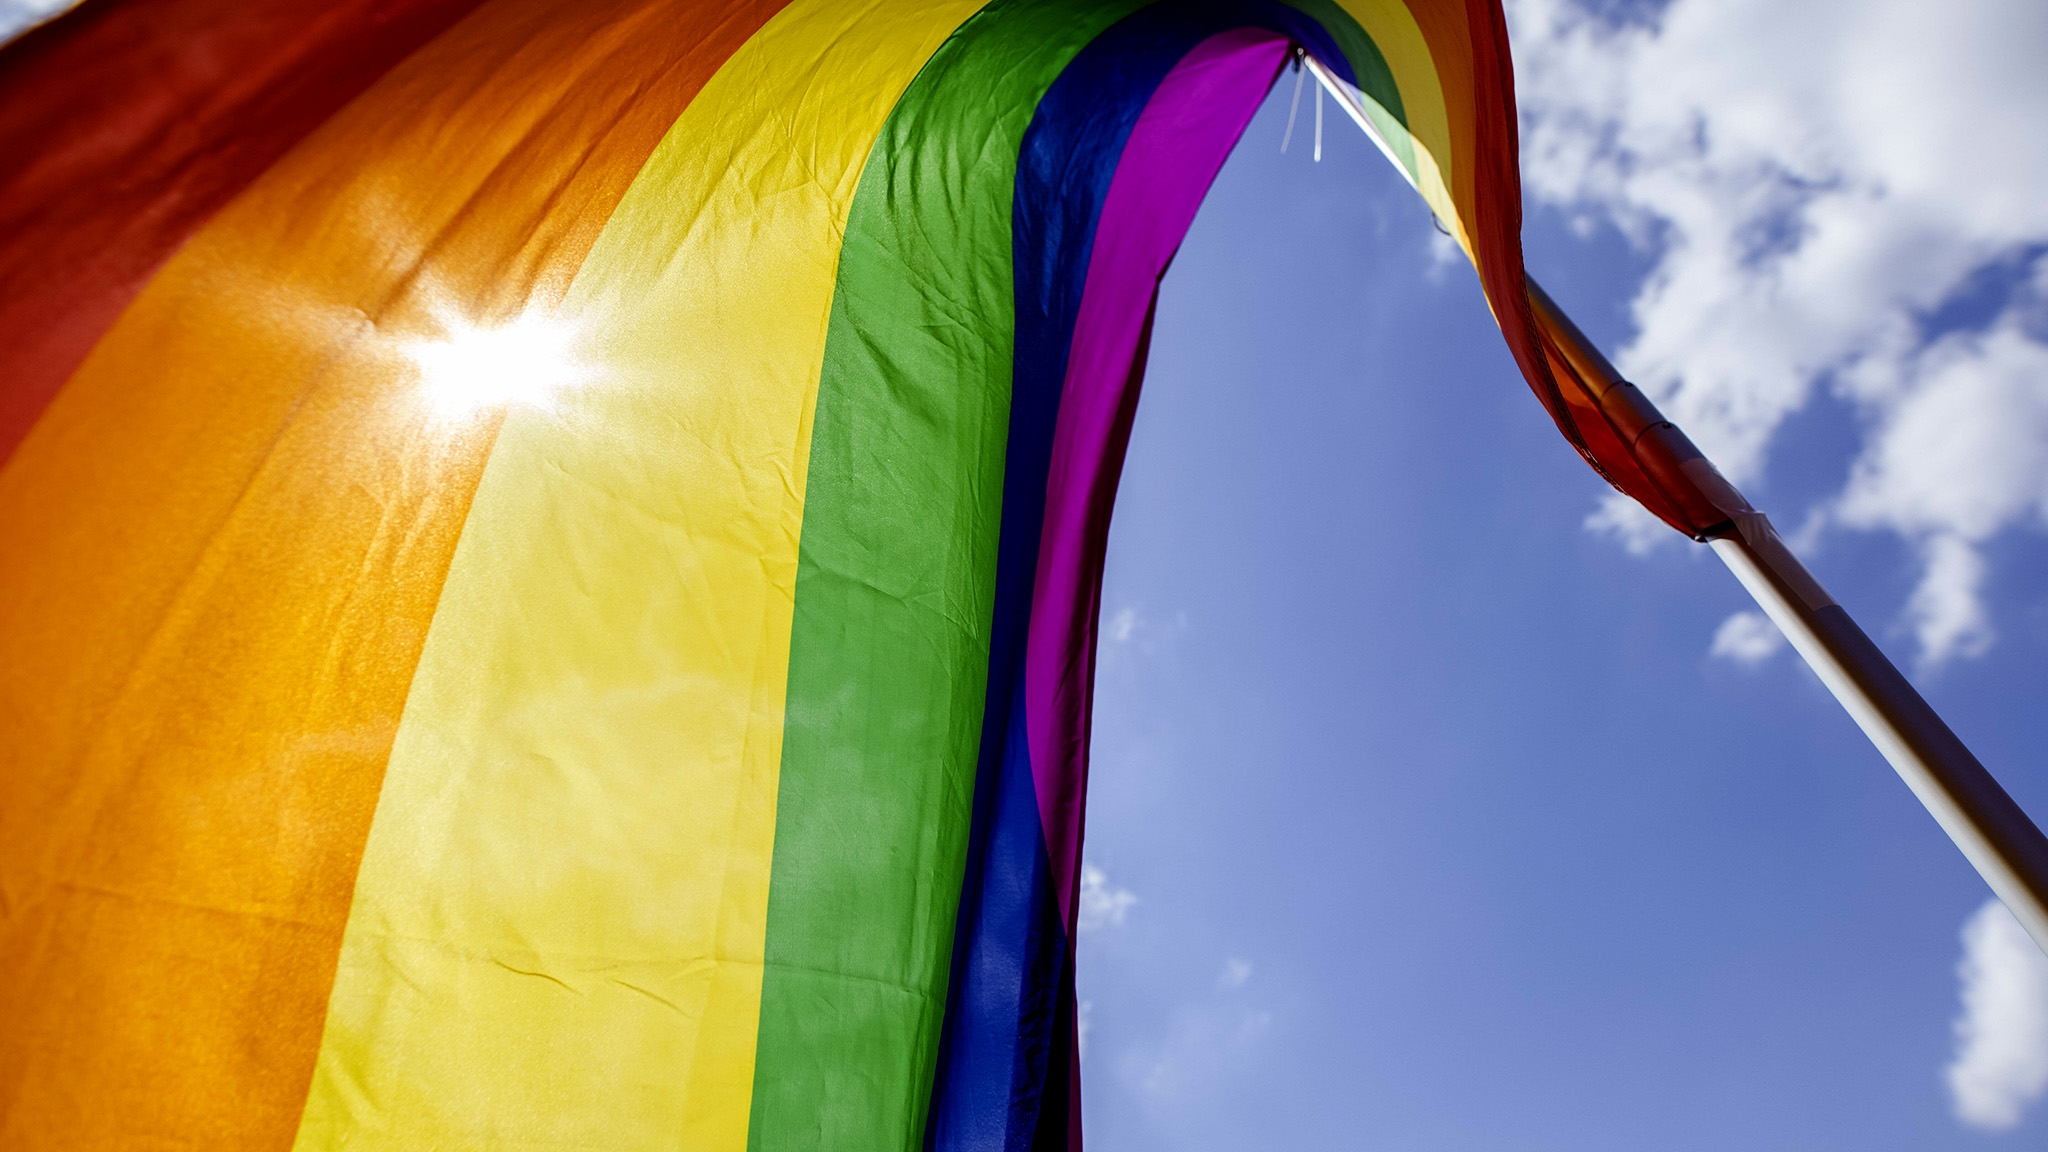 Wie gut sind deutsche Unternehmen auf die Bedürfnisse der LGBTIQ+ Community eingestellt? Das misst der  Pride-Index 2021 der Uhlala Group. Er rückt das Engagement von deutschen Unternehmen und Organisationen für deren lesbische, schwule, bisexuelle, trans- und intergeschlechtlichen sowie queeren Mitarbeitenden in den Vordergrund.